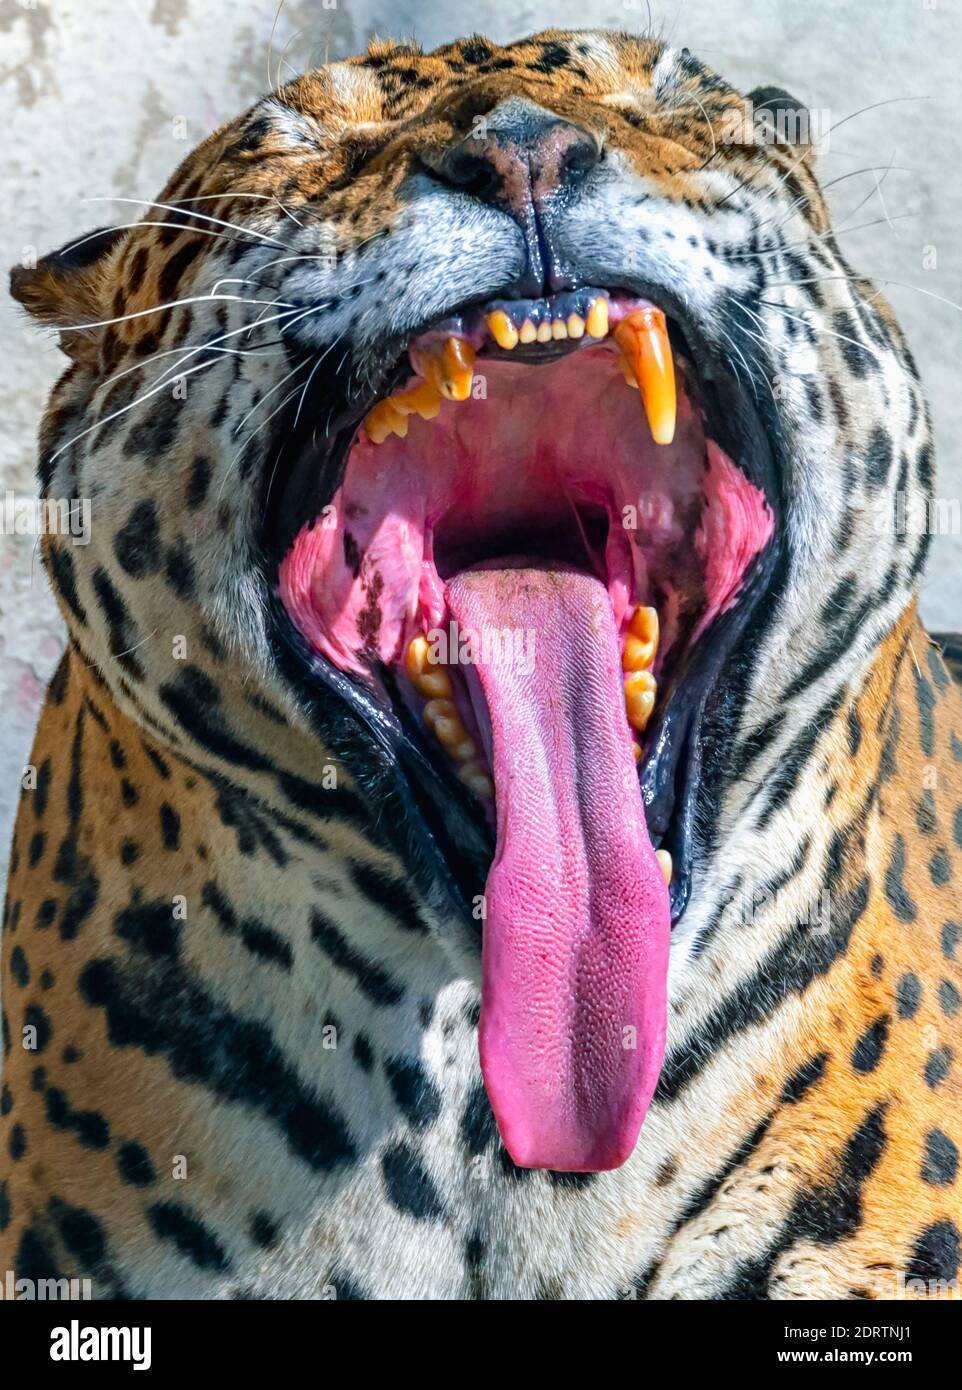 Gros plan/photo d'un léopard indien qui s'ébâille à l'intérieur d'une enceinte du parc zoologique national de Delhi, également connu sous le nom de zoo de Delhi. Banque D'Images